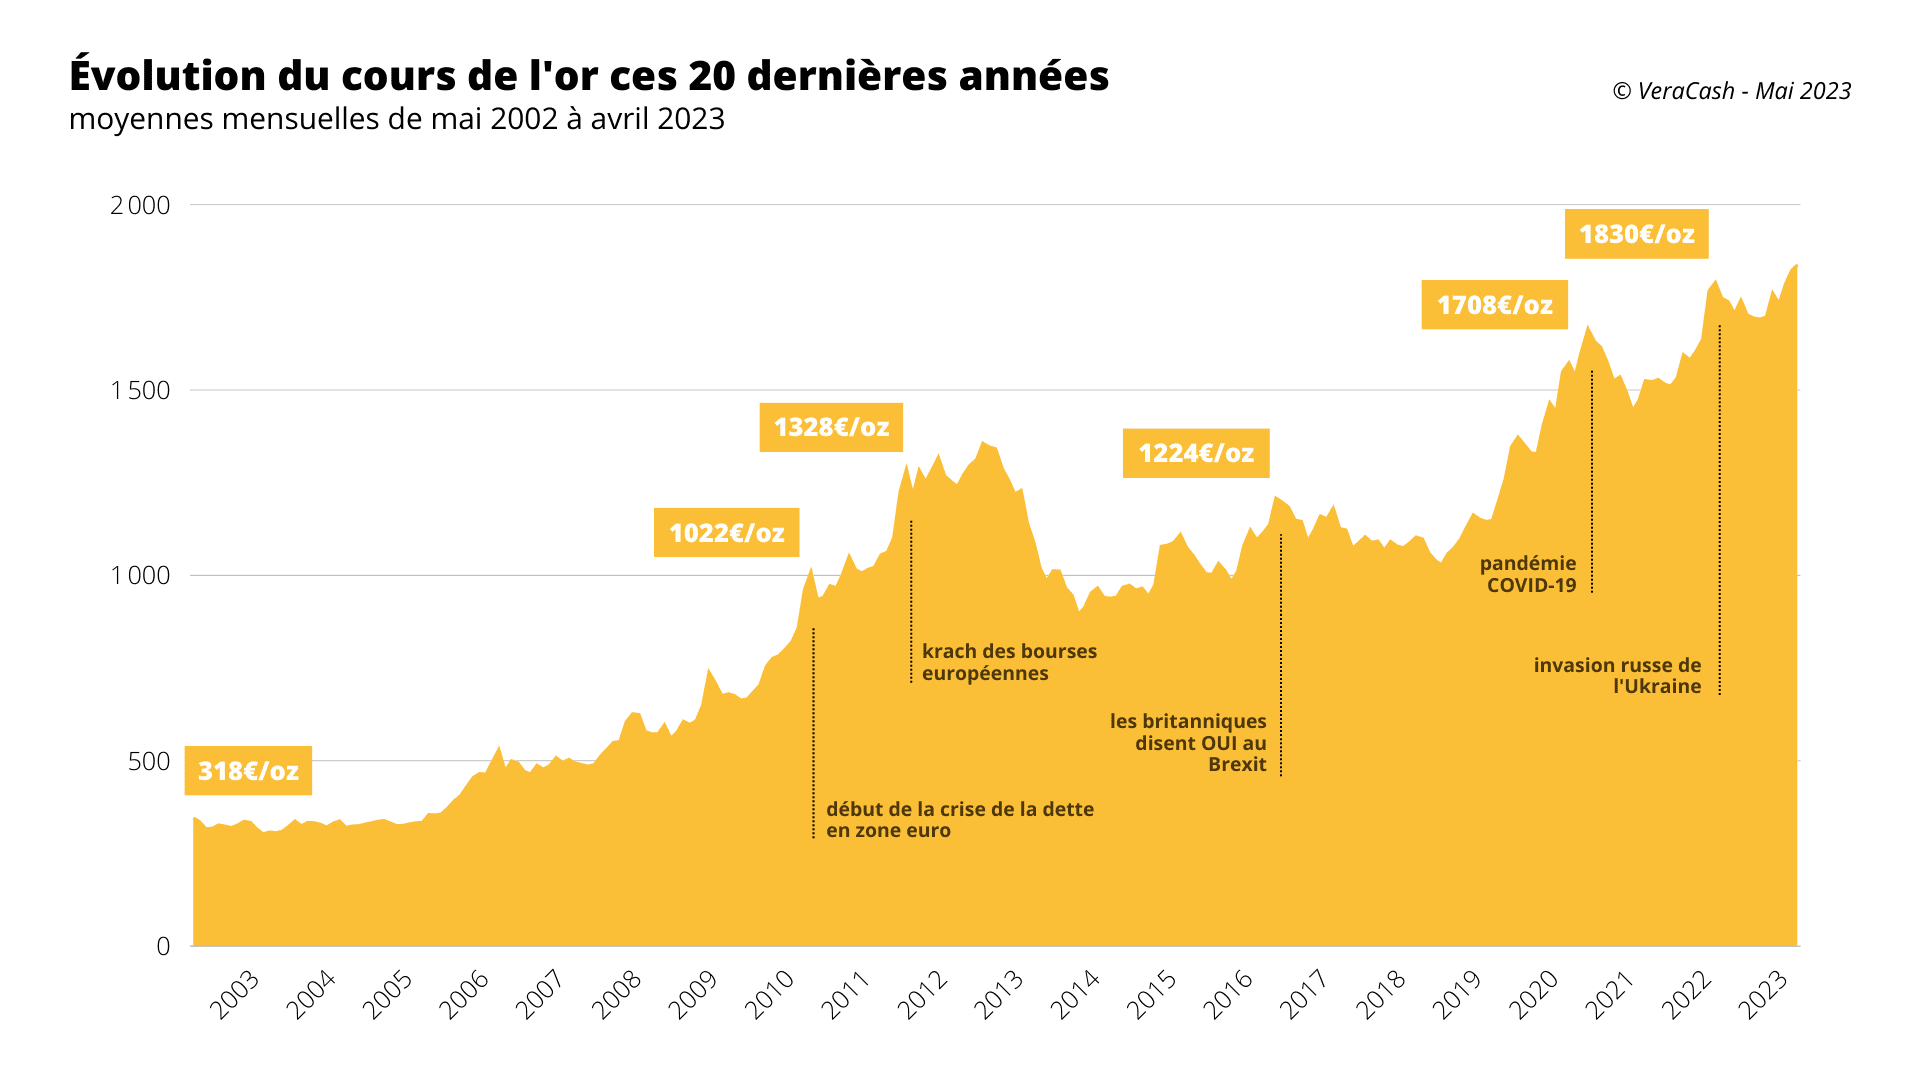 graphique des différents records du cours or en euros au cours des 20 dernières années